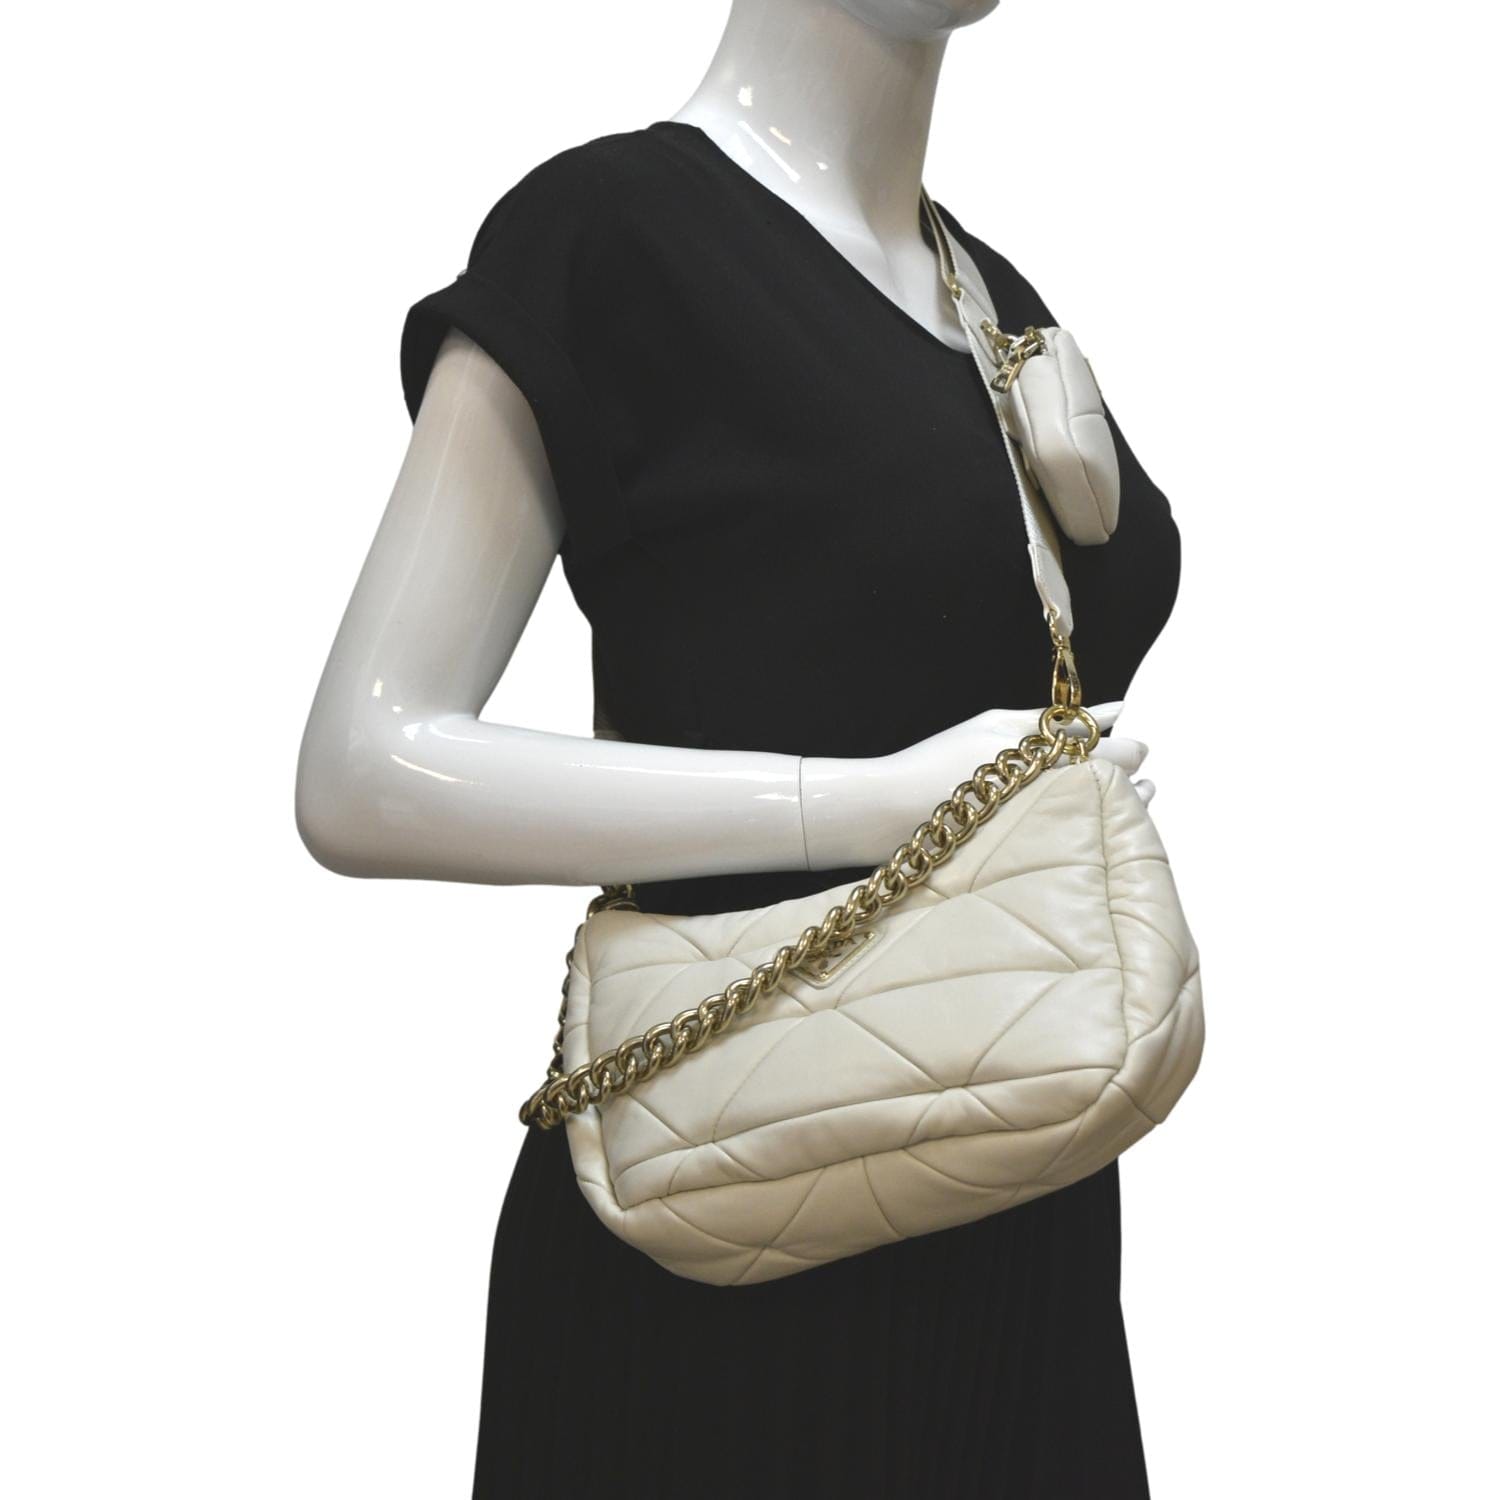 Shop Prada System Nappa Patchwork Shoulder Bag